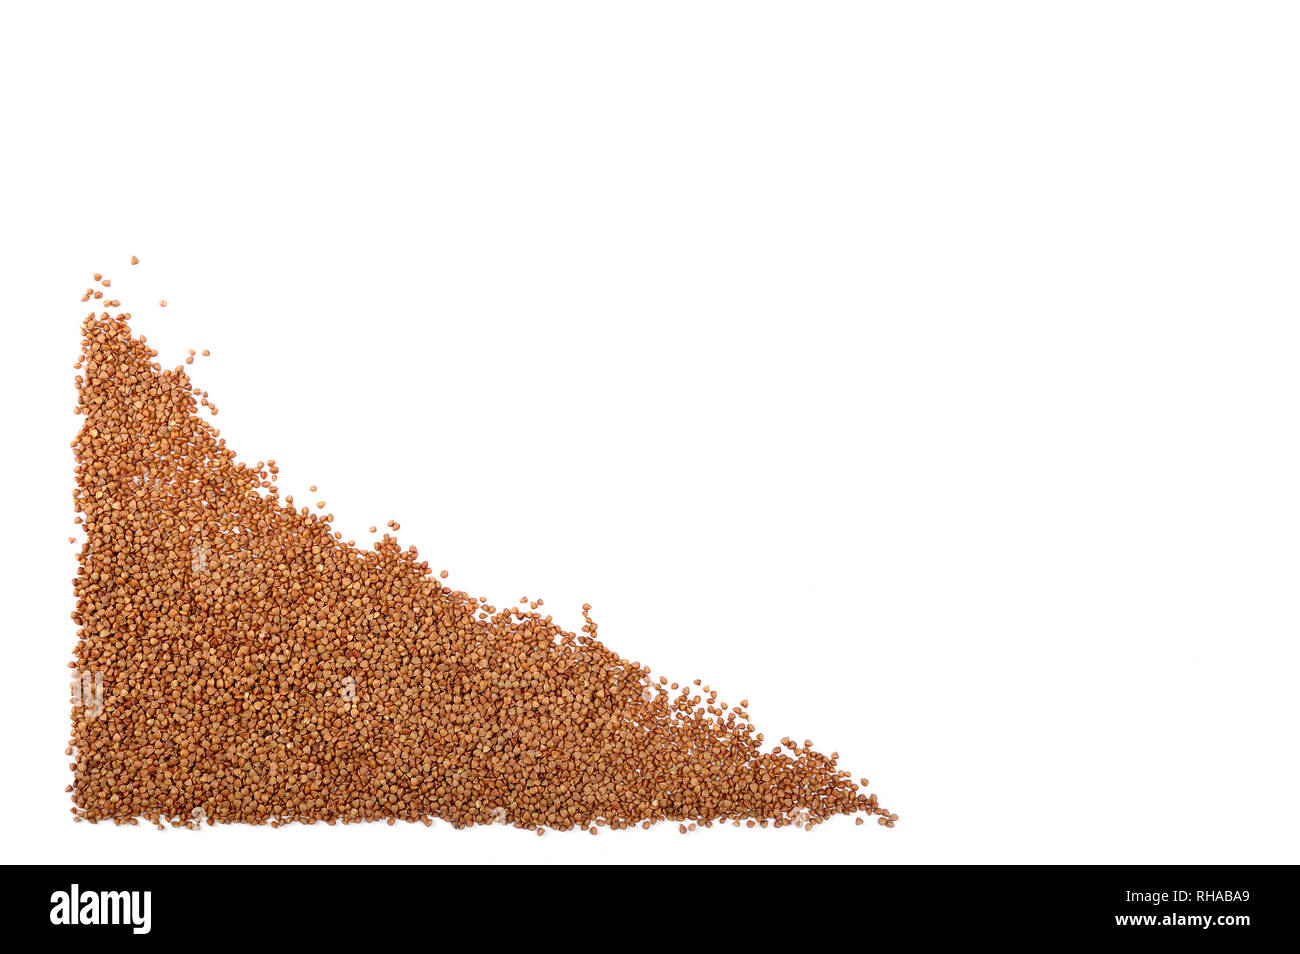 Grano saraceno organico isolato su bianco. Chicco di grano saraceno non contiene glutine, essa può essere mangiato da persone con glutine-disturbi correlati.negozio di generi alimentari o dietetici con Foto Stock